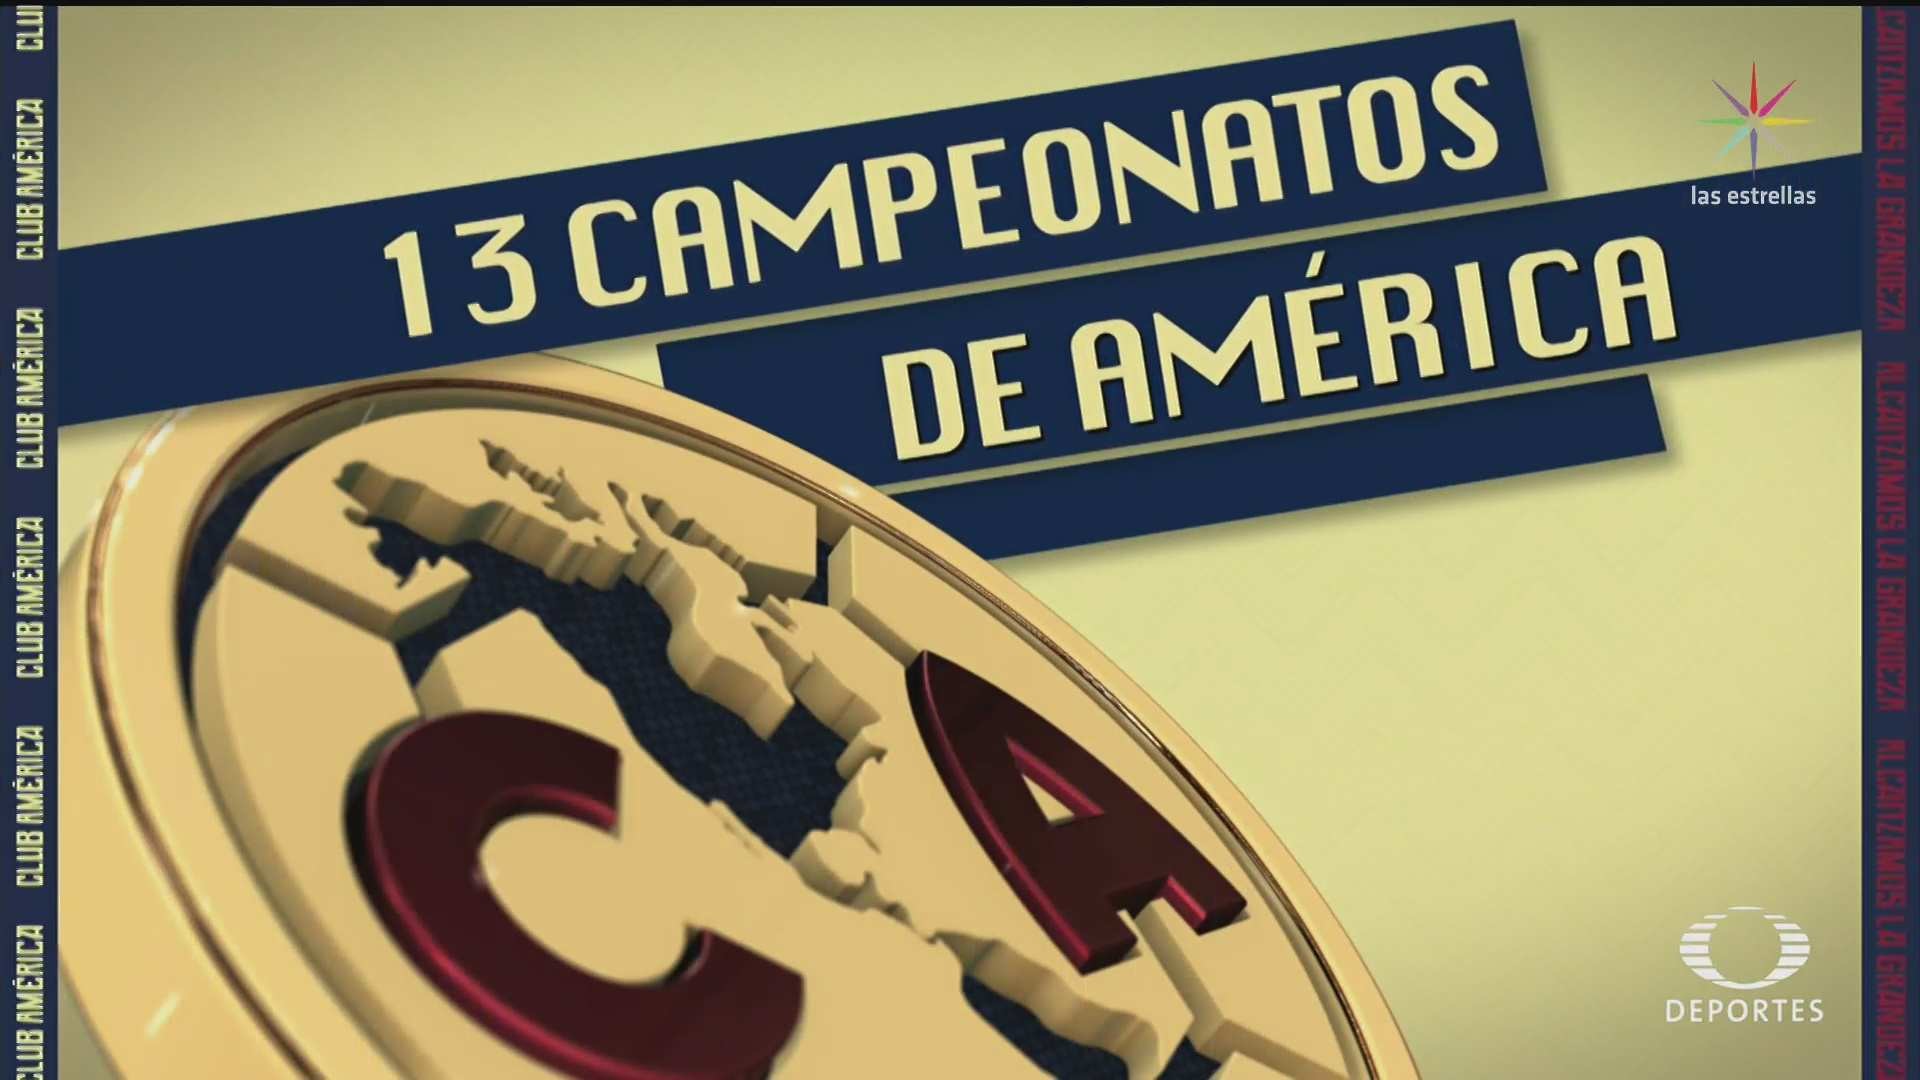 Data Src Club Aguilas Del America Wallpapers Hd For - 13 Campeonatos Del America - HD Wallpaper 